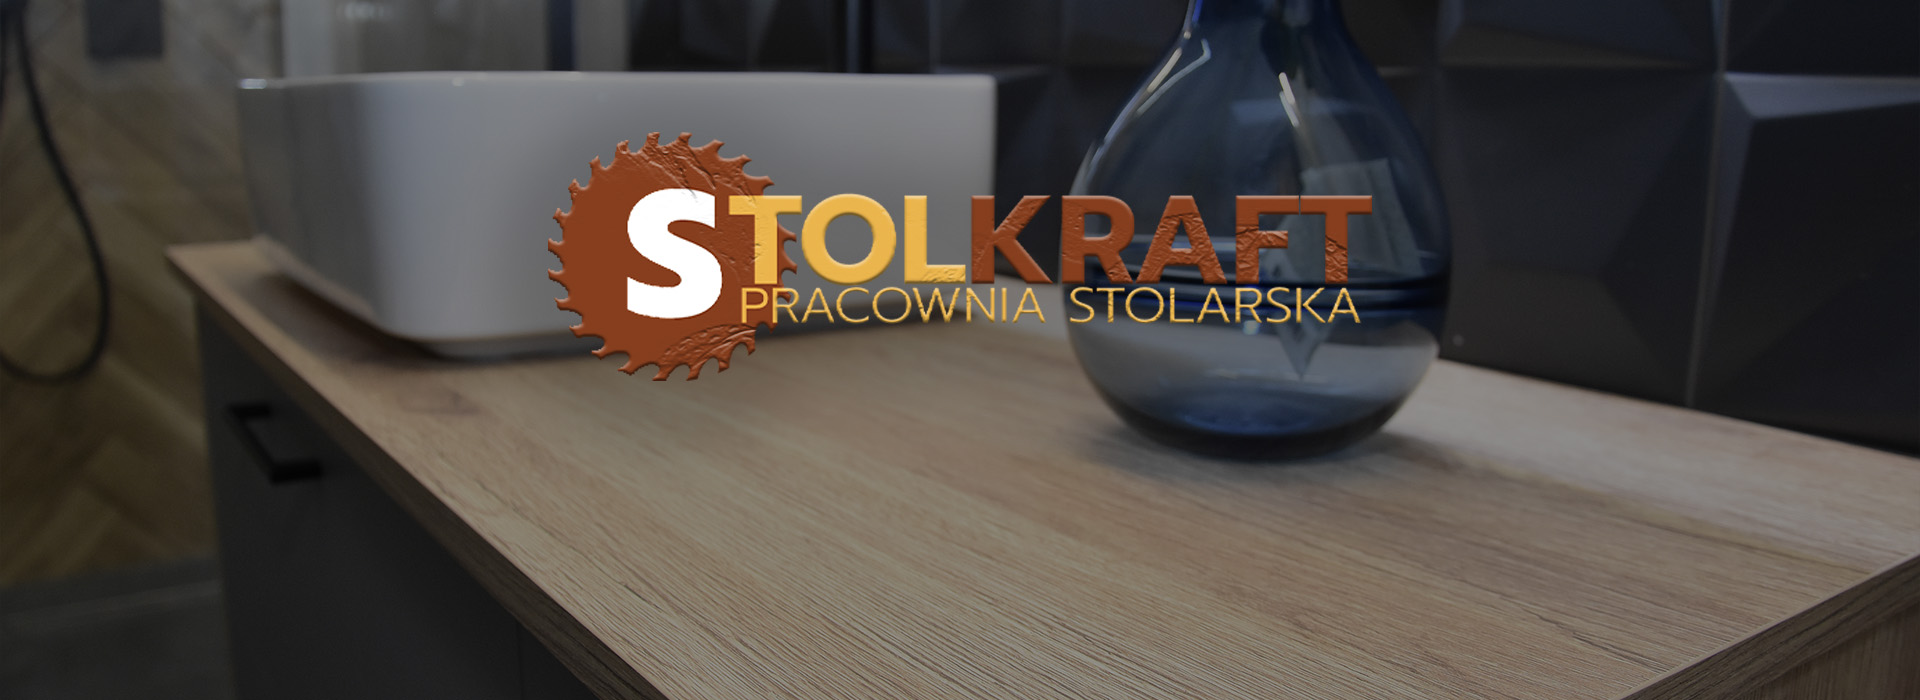 logo Stolkraft - pracownia stolarska